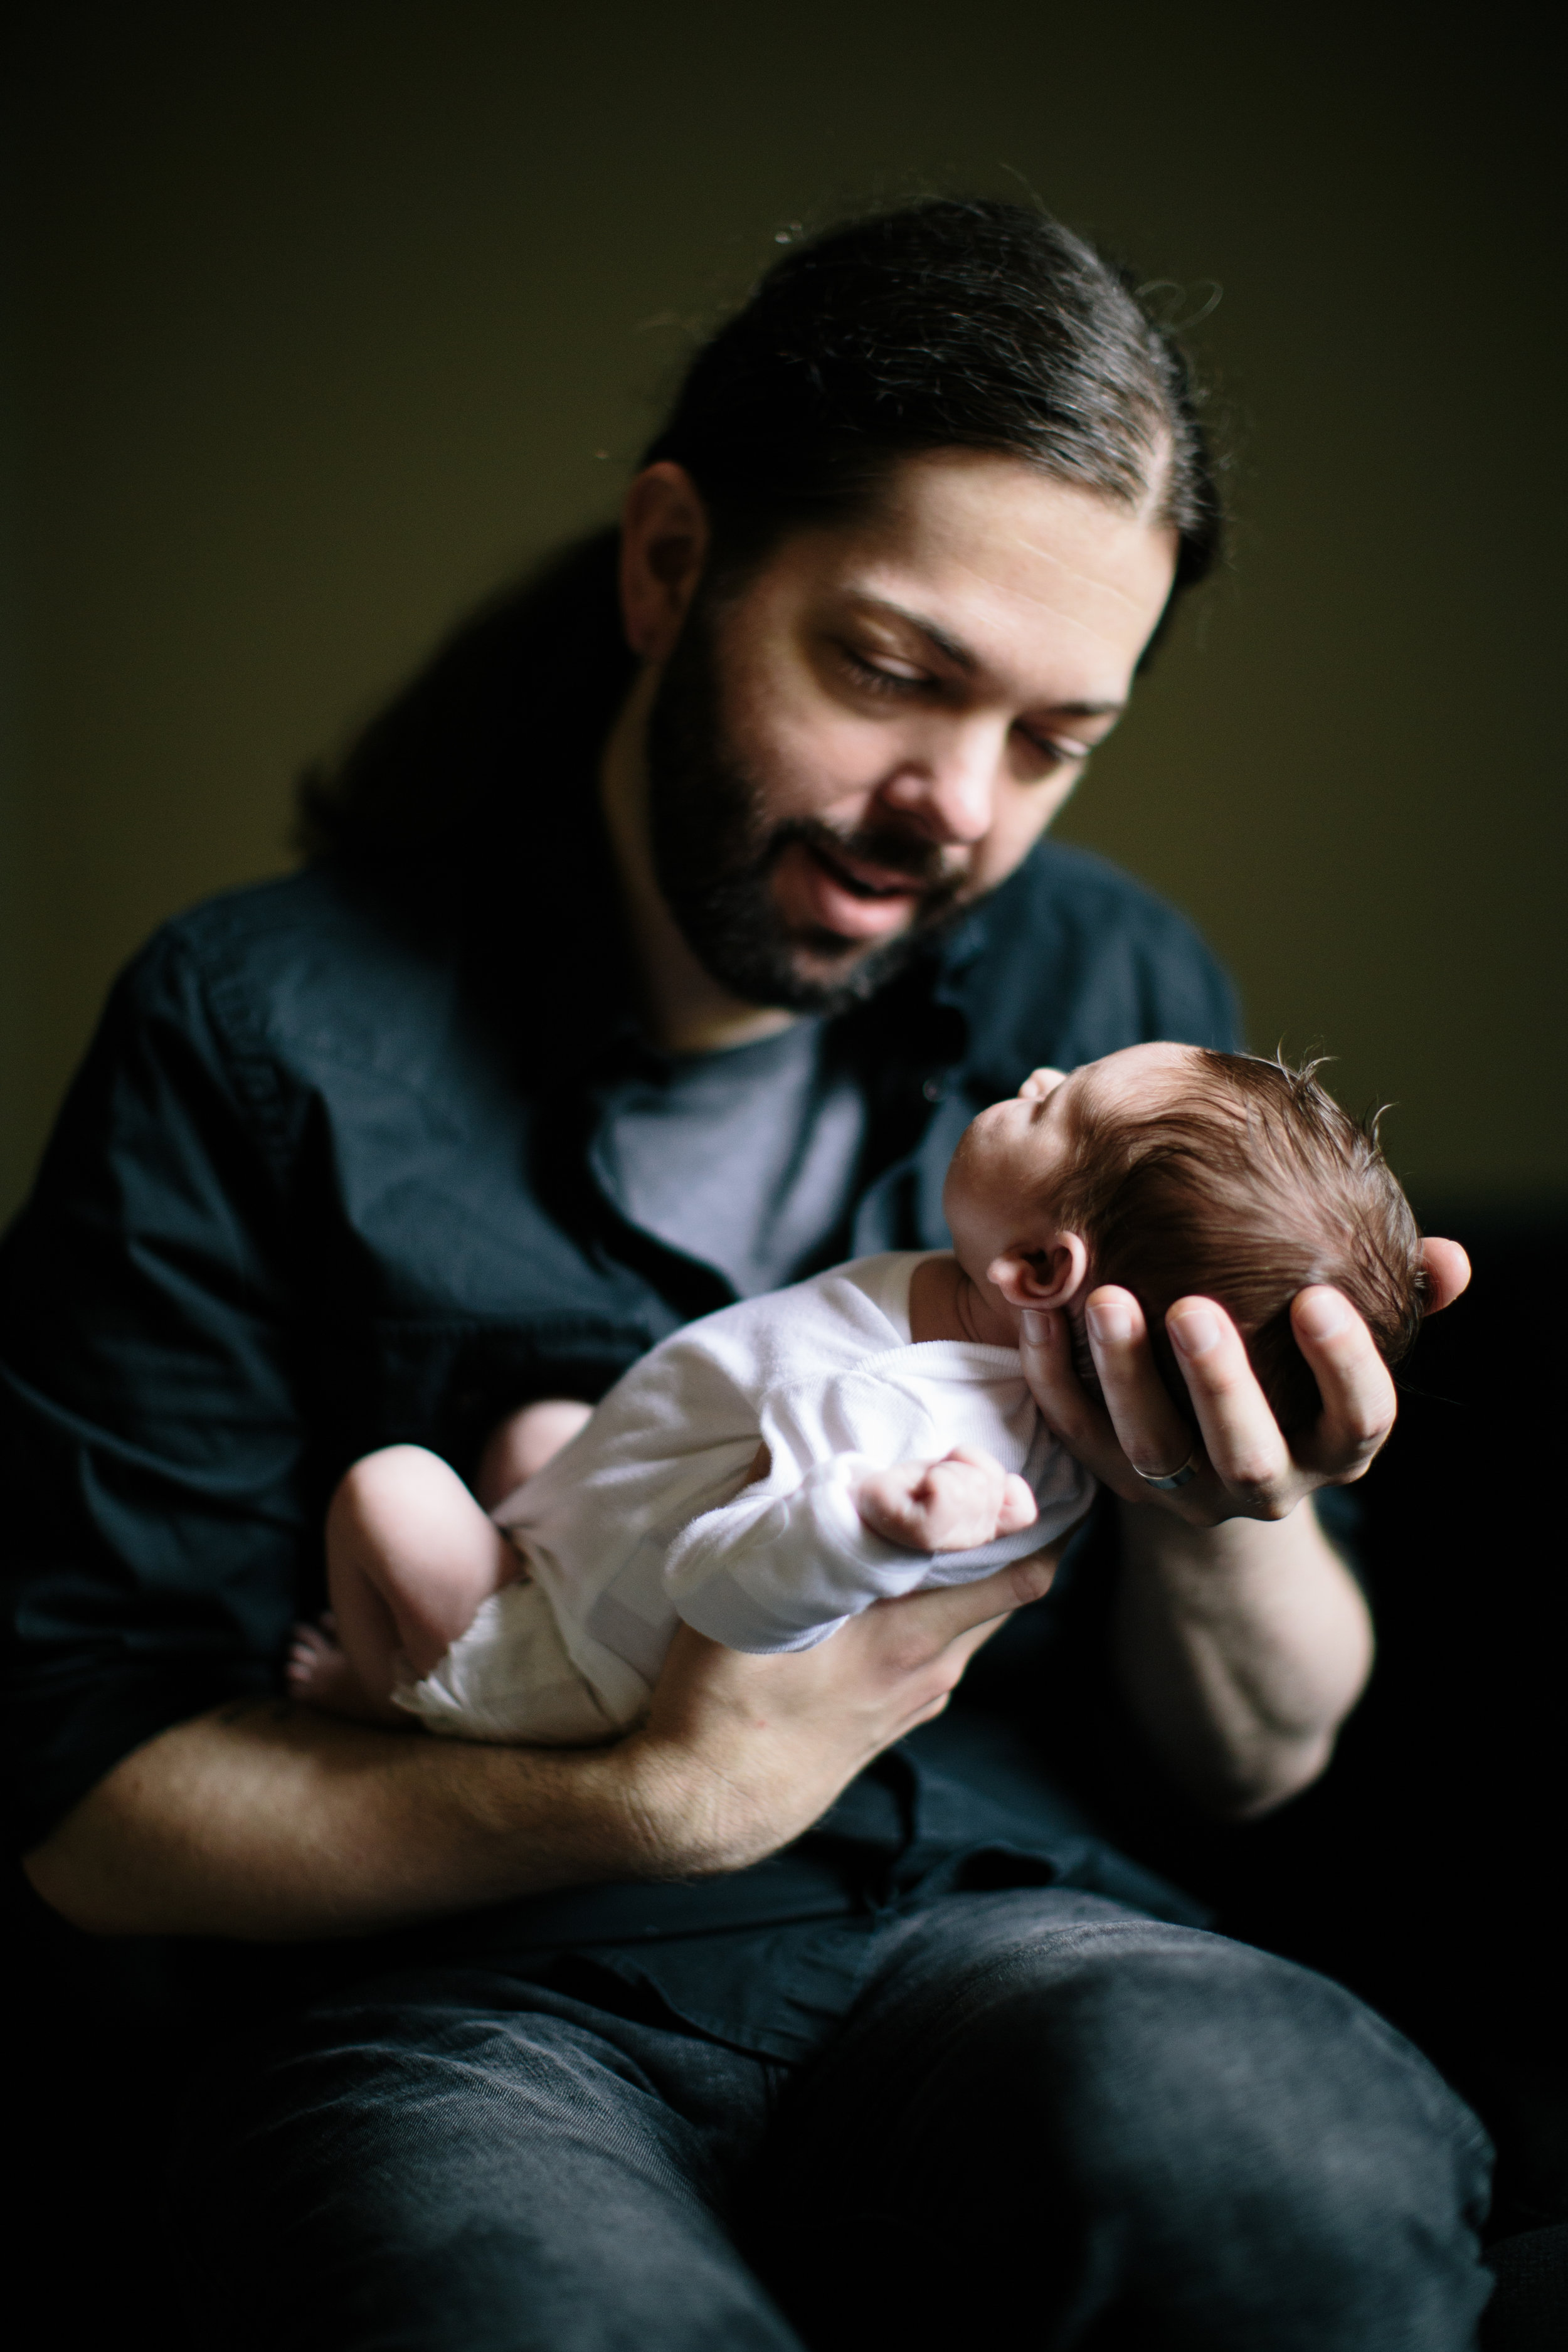 Søren | newborn photographer | Durham, NC | Merritt Chesson Photography